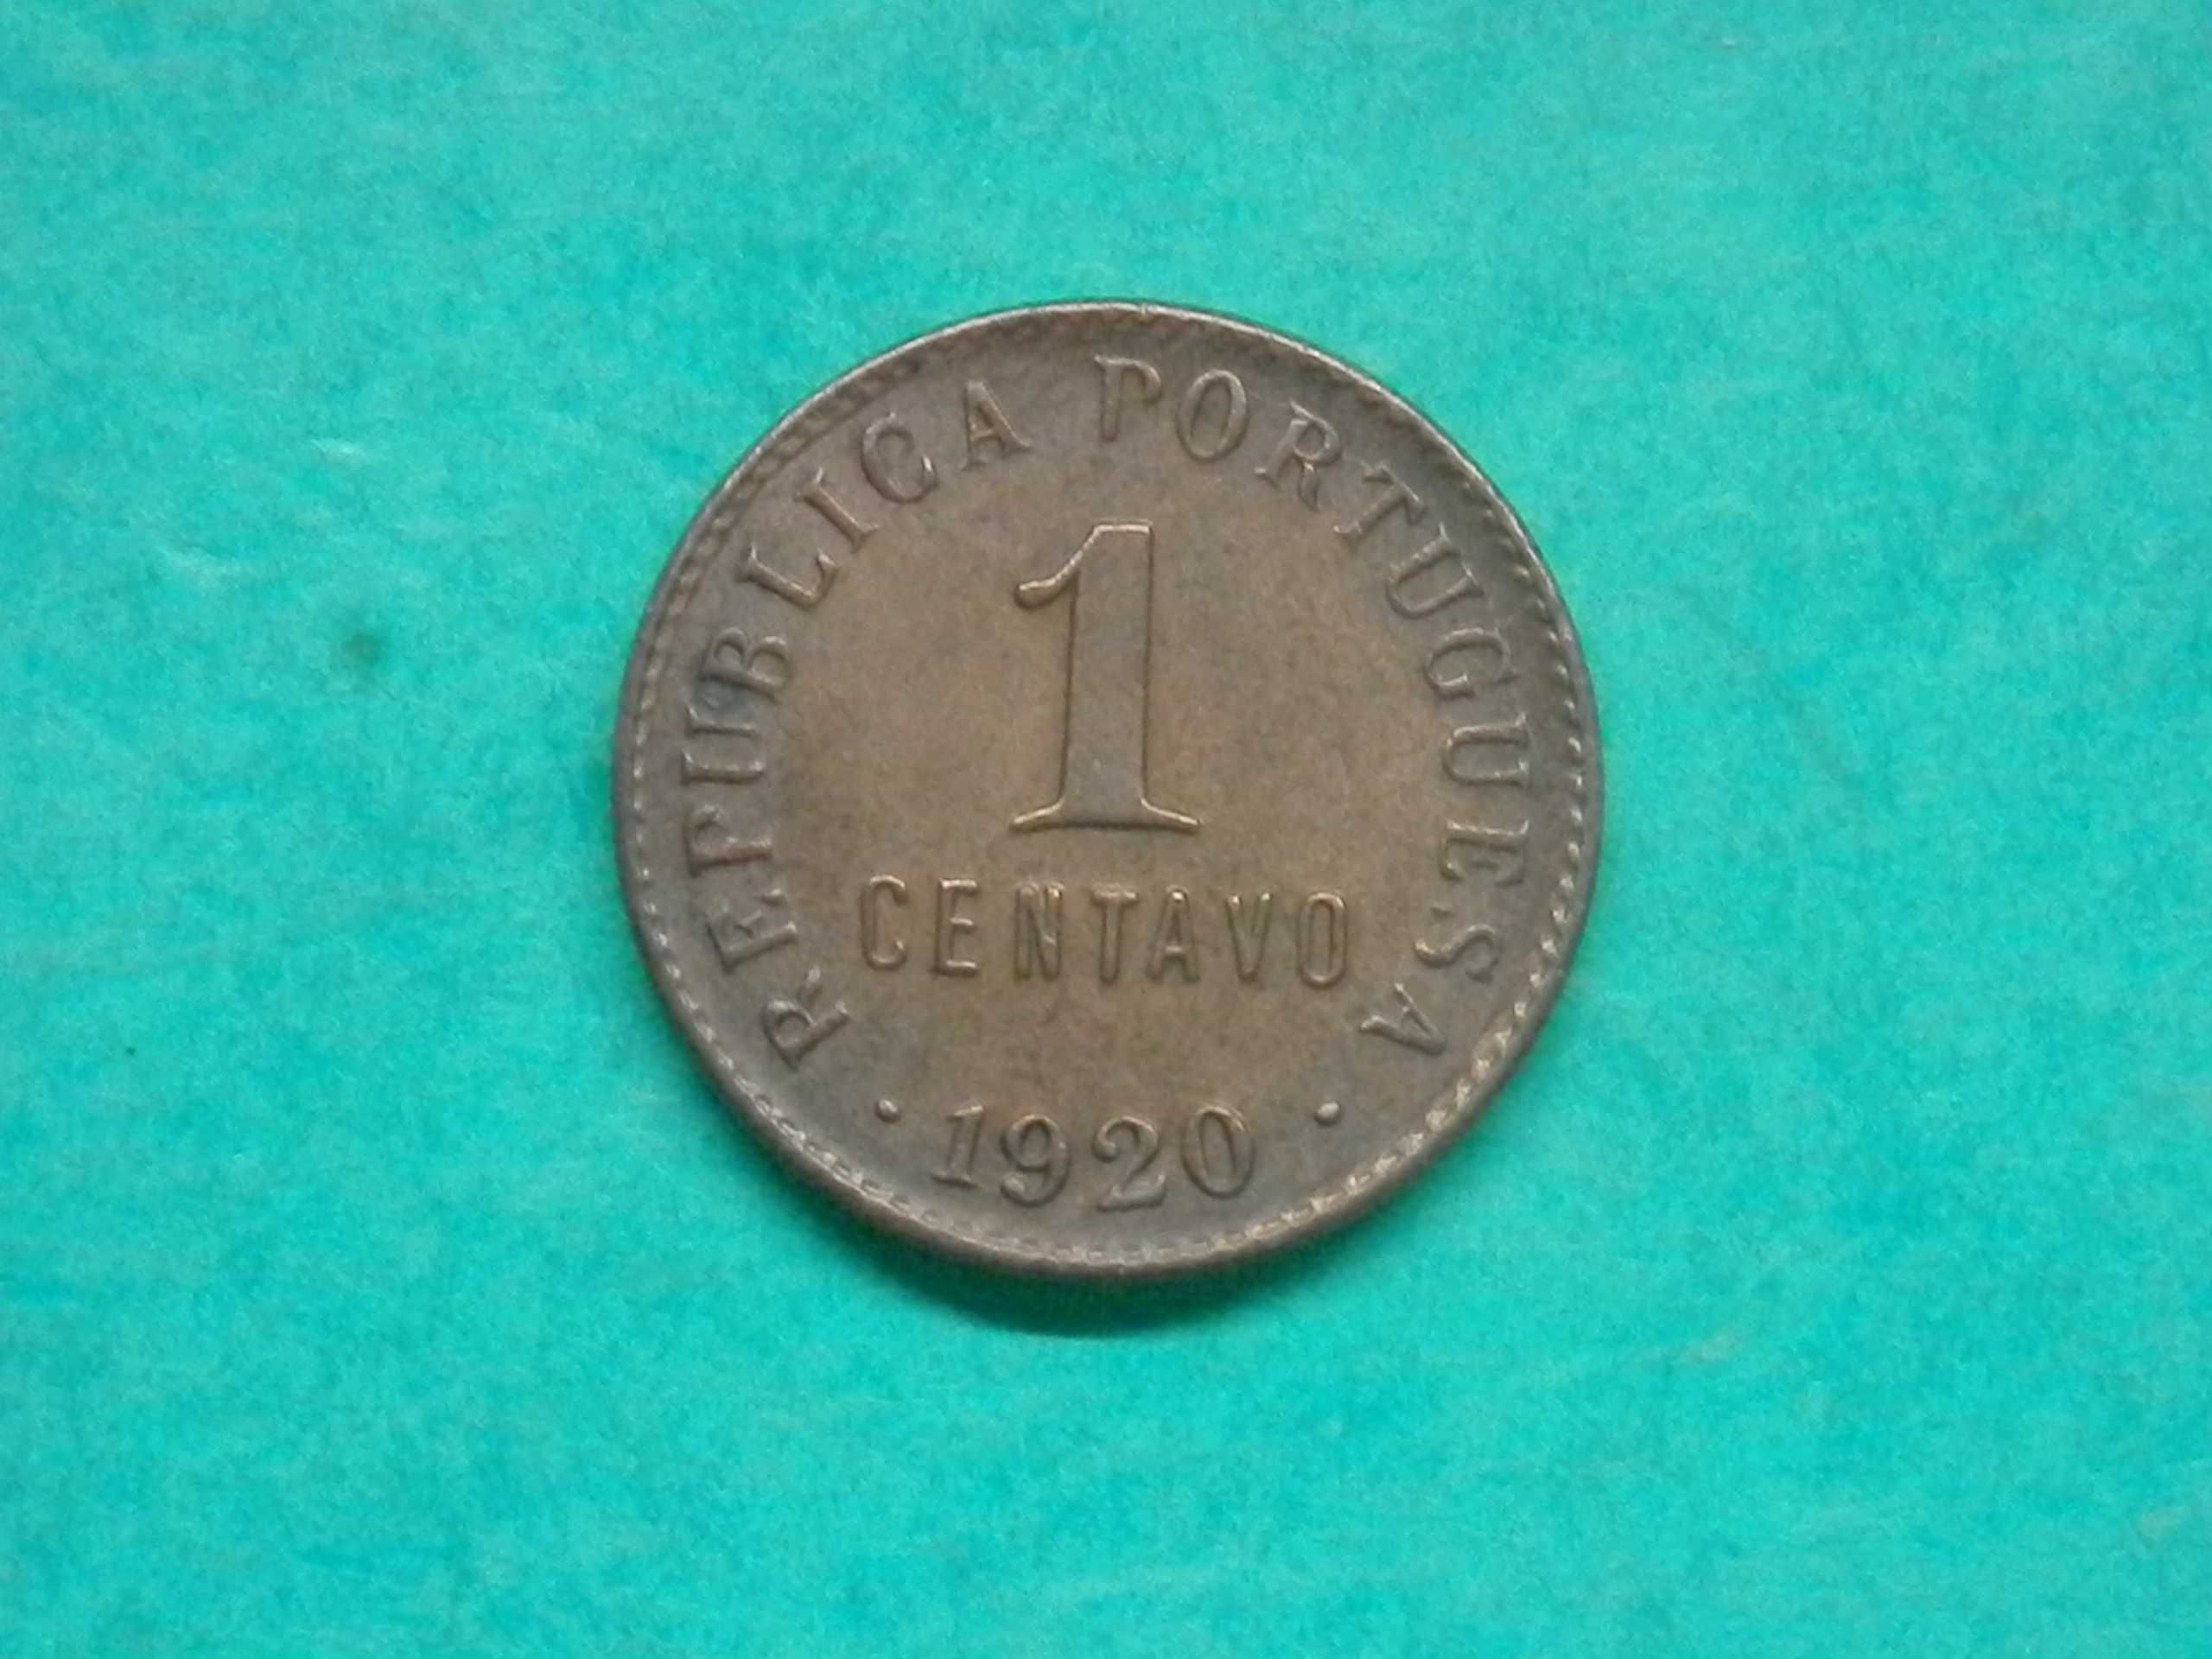 1011 - República: 1 centavo 1920 bronze, por 1,50